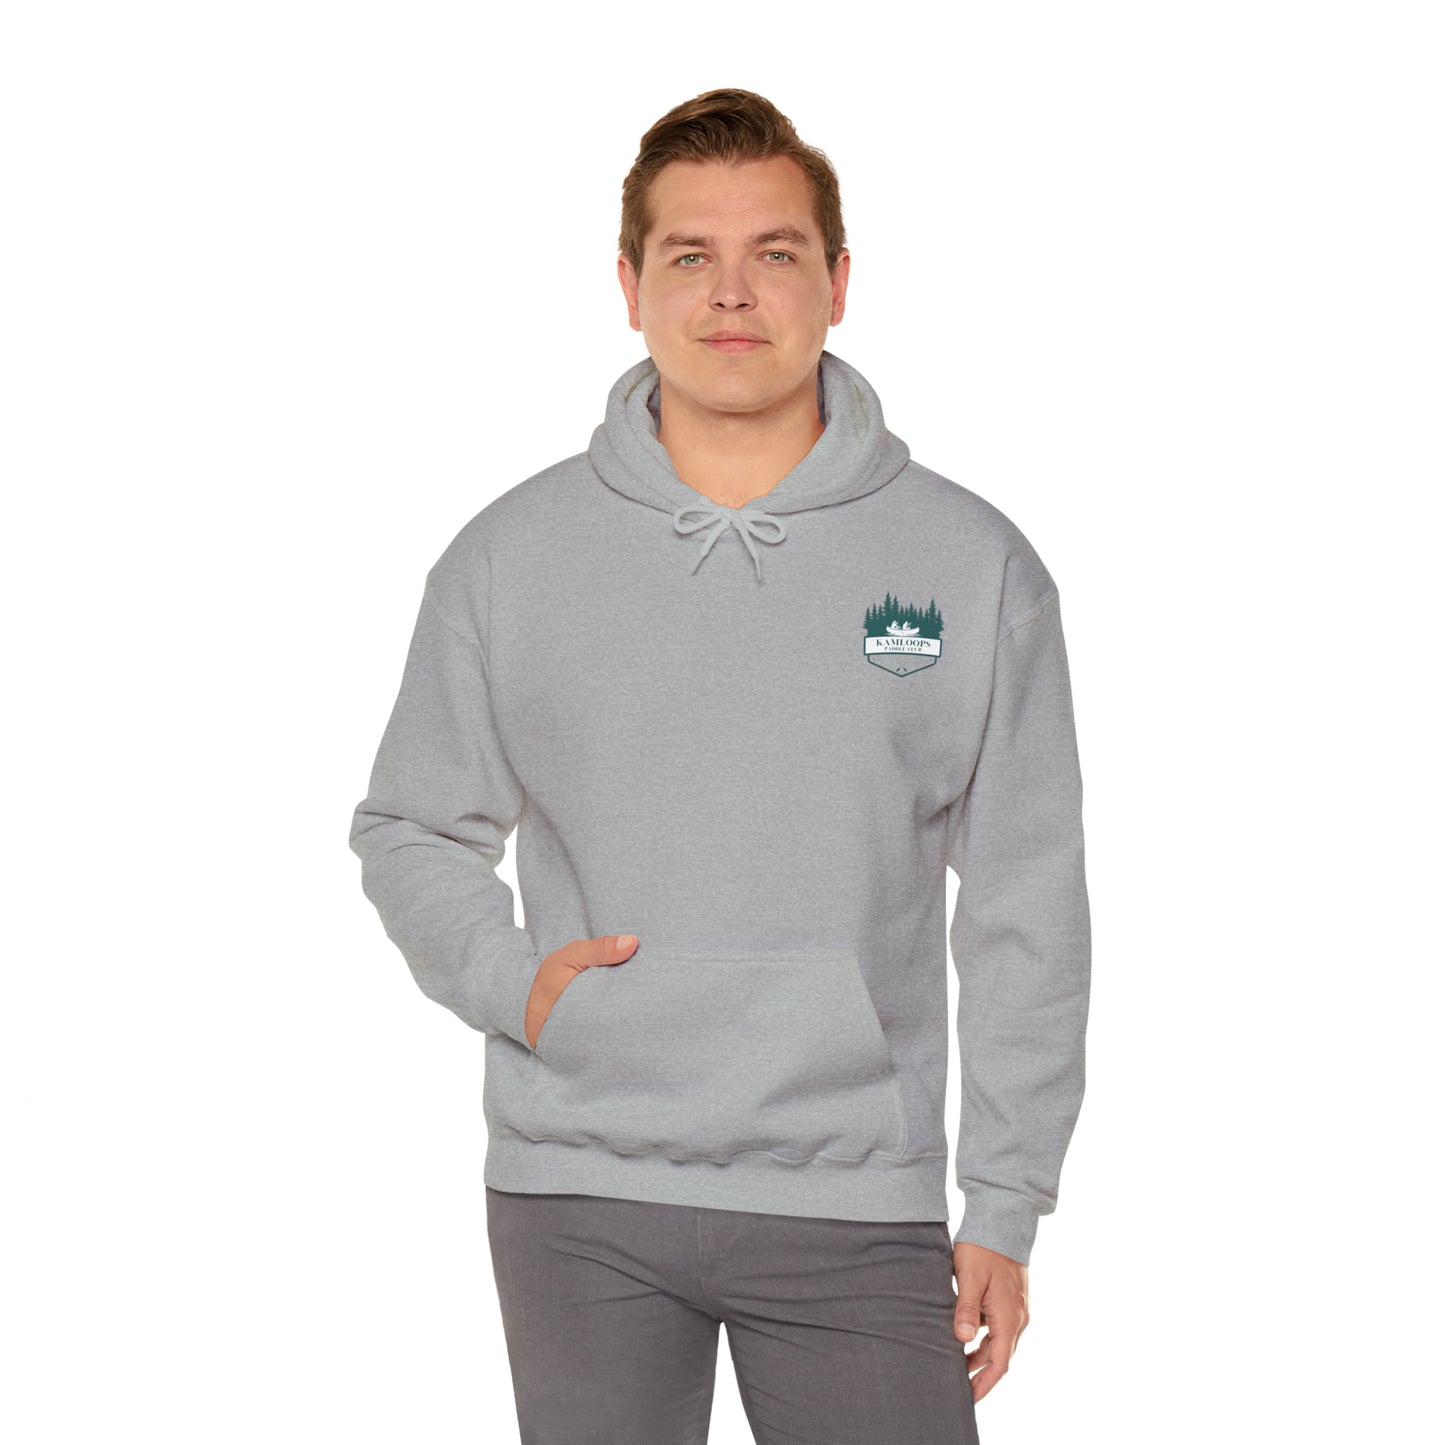 Kamloops Paddle Club - Unisex Heavy Blend™ Hooded Sweatshirt